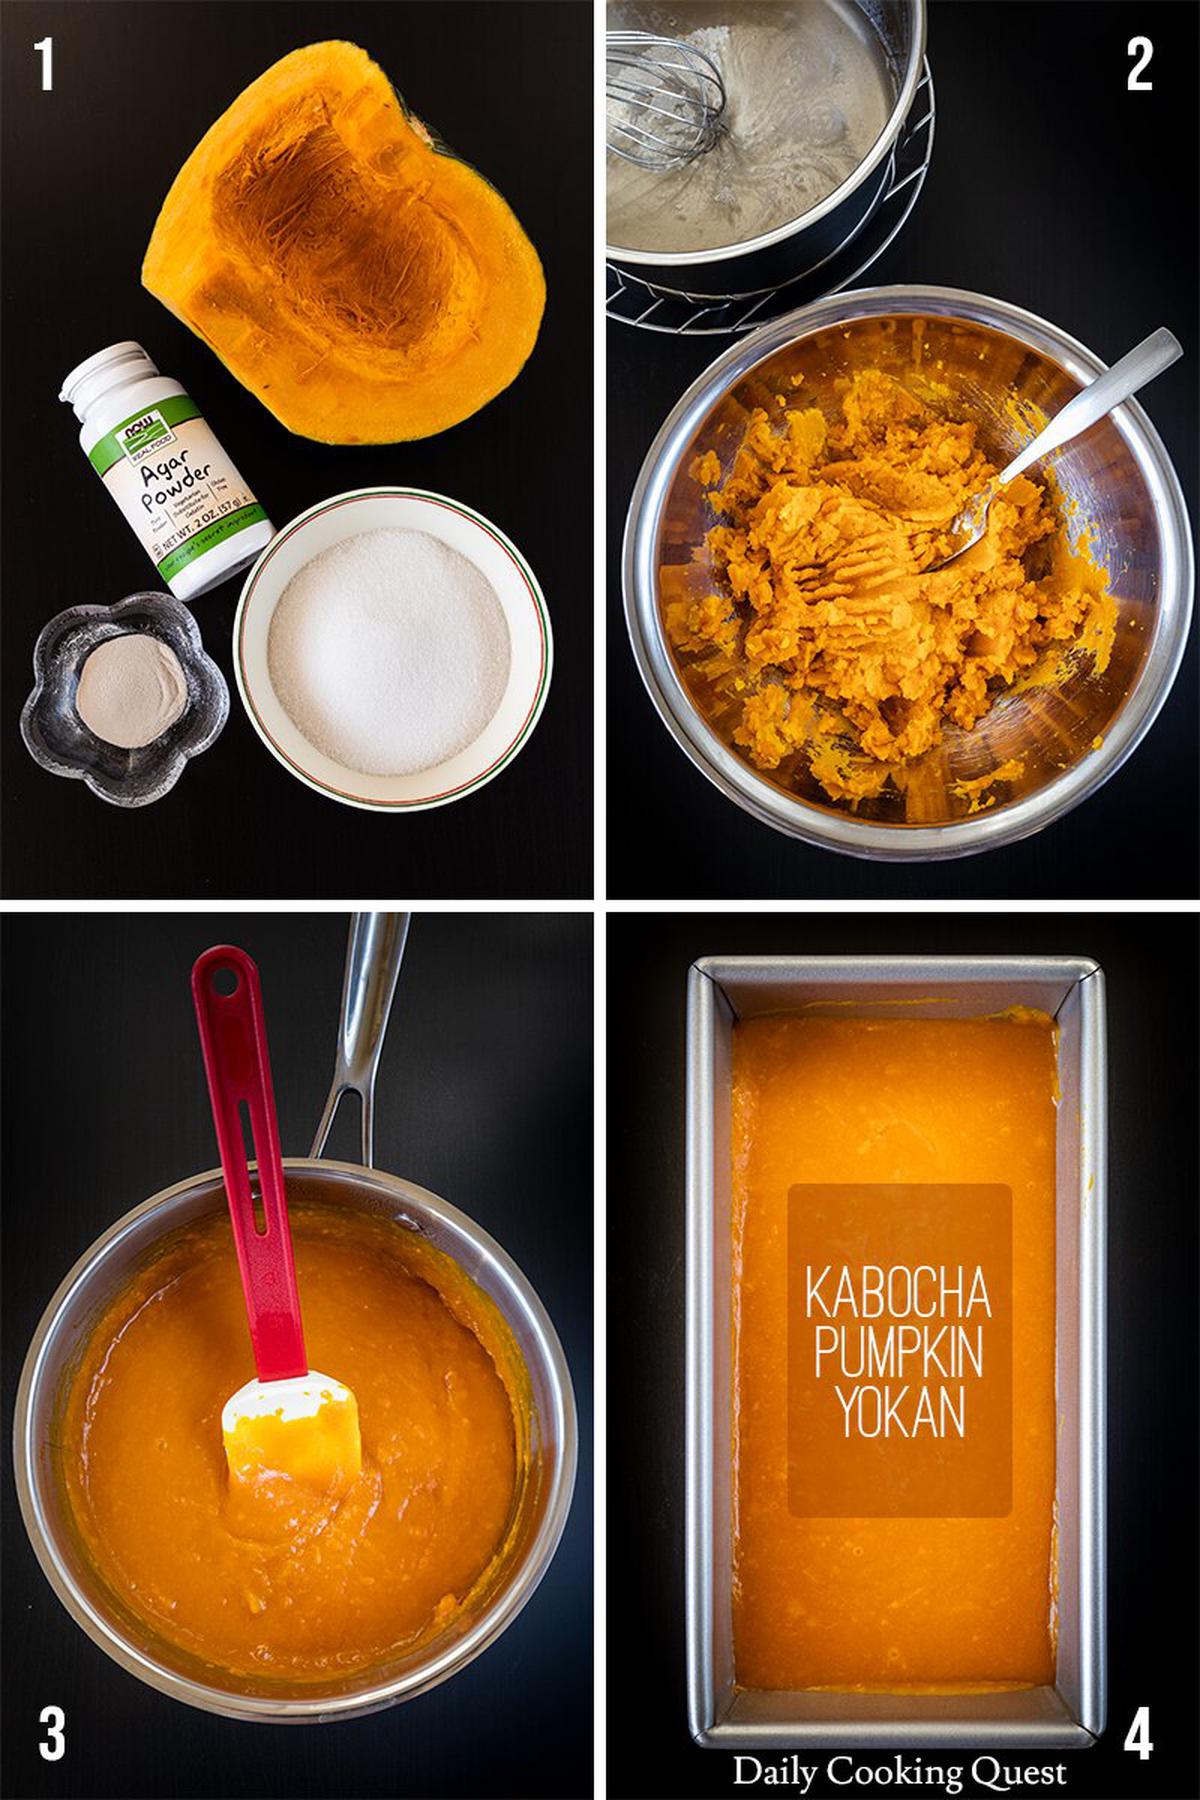 (1) Ingredients for kabocha yokan: kabocha, agar-agar powder, and sugar. (2) Mashed kabocha and boiled agar-agar. (3) Kabocha yokan mixture from mashed kabocha and boiled agar-agar. (4) Kabocha yokan poured into a loaf pan to set.